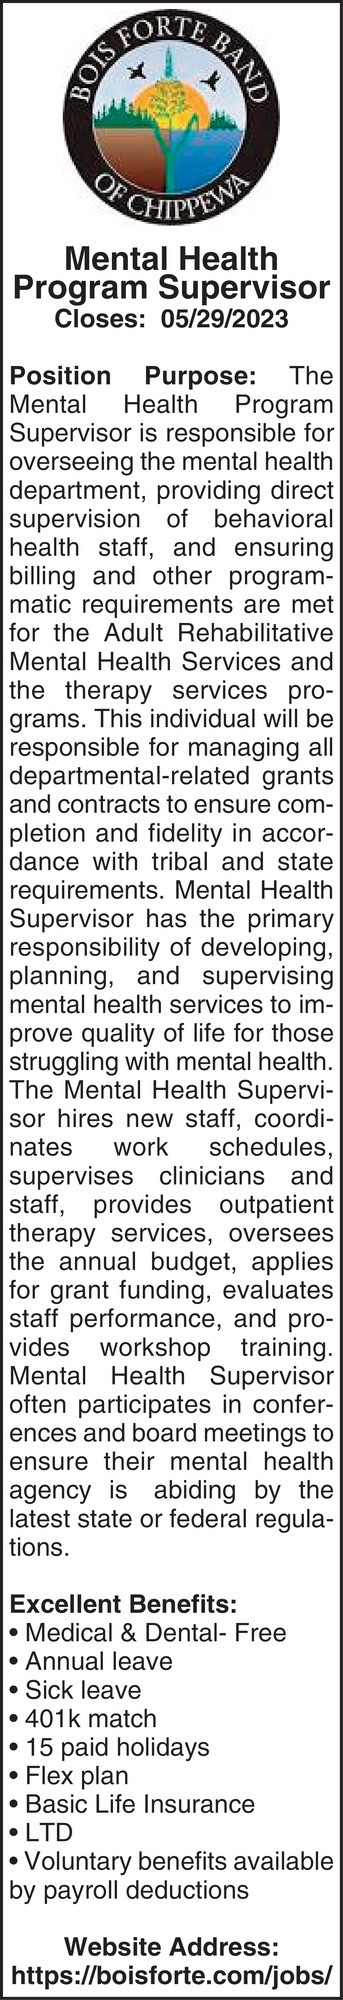 Mental Health Program Supervisor